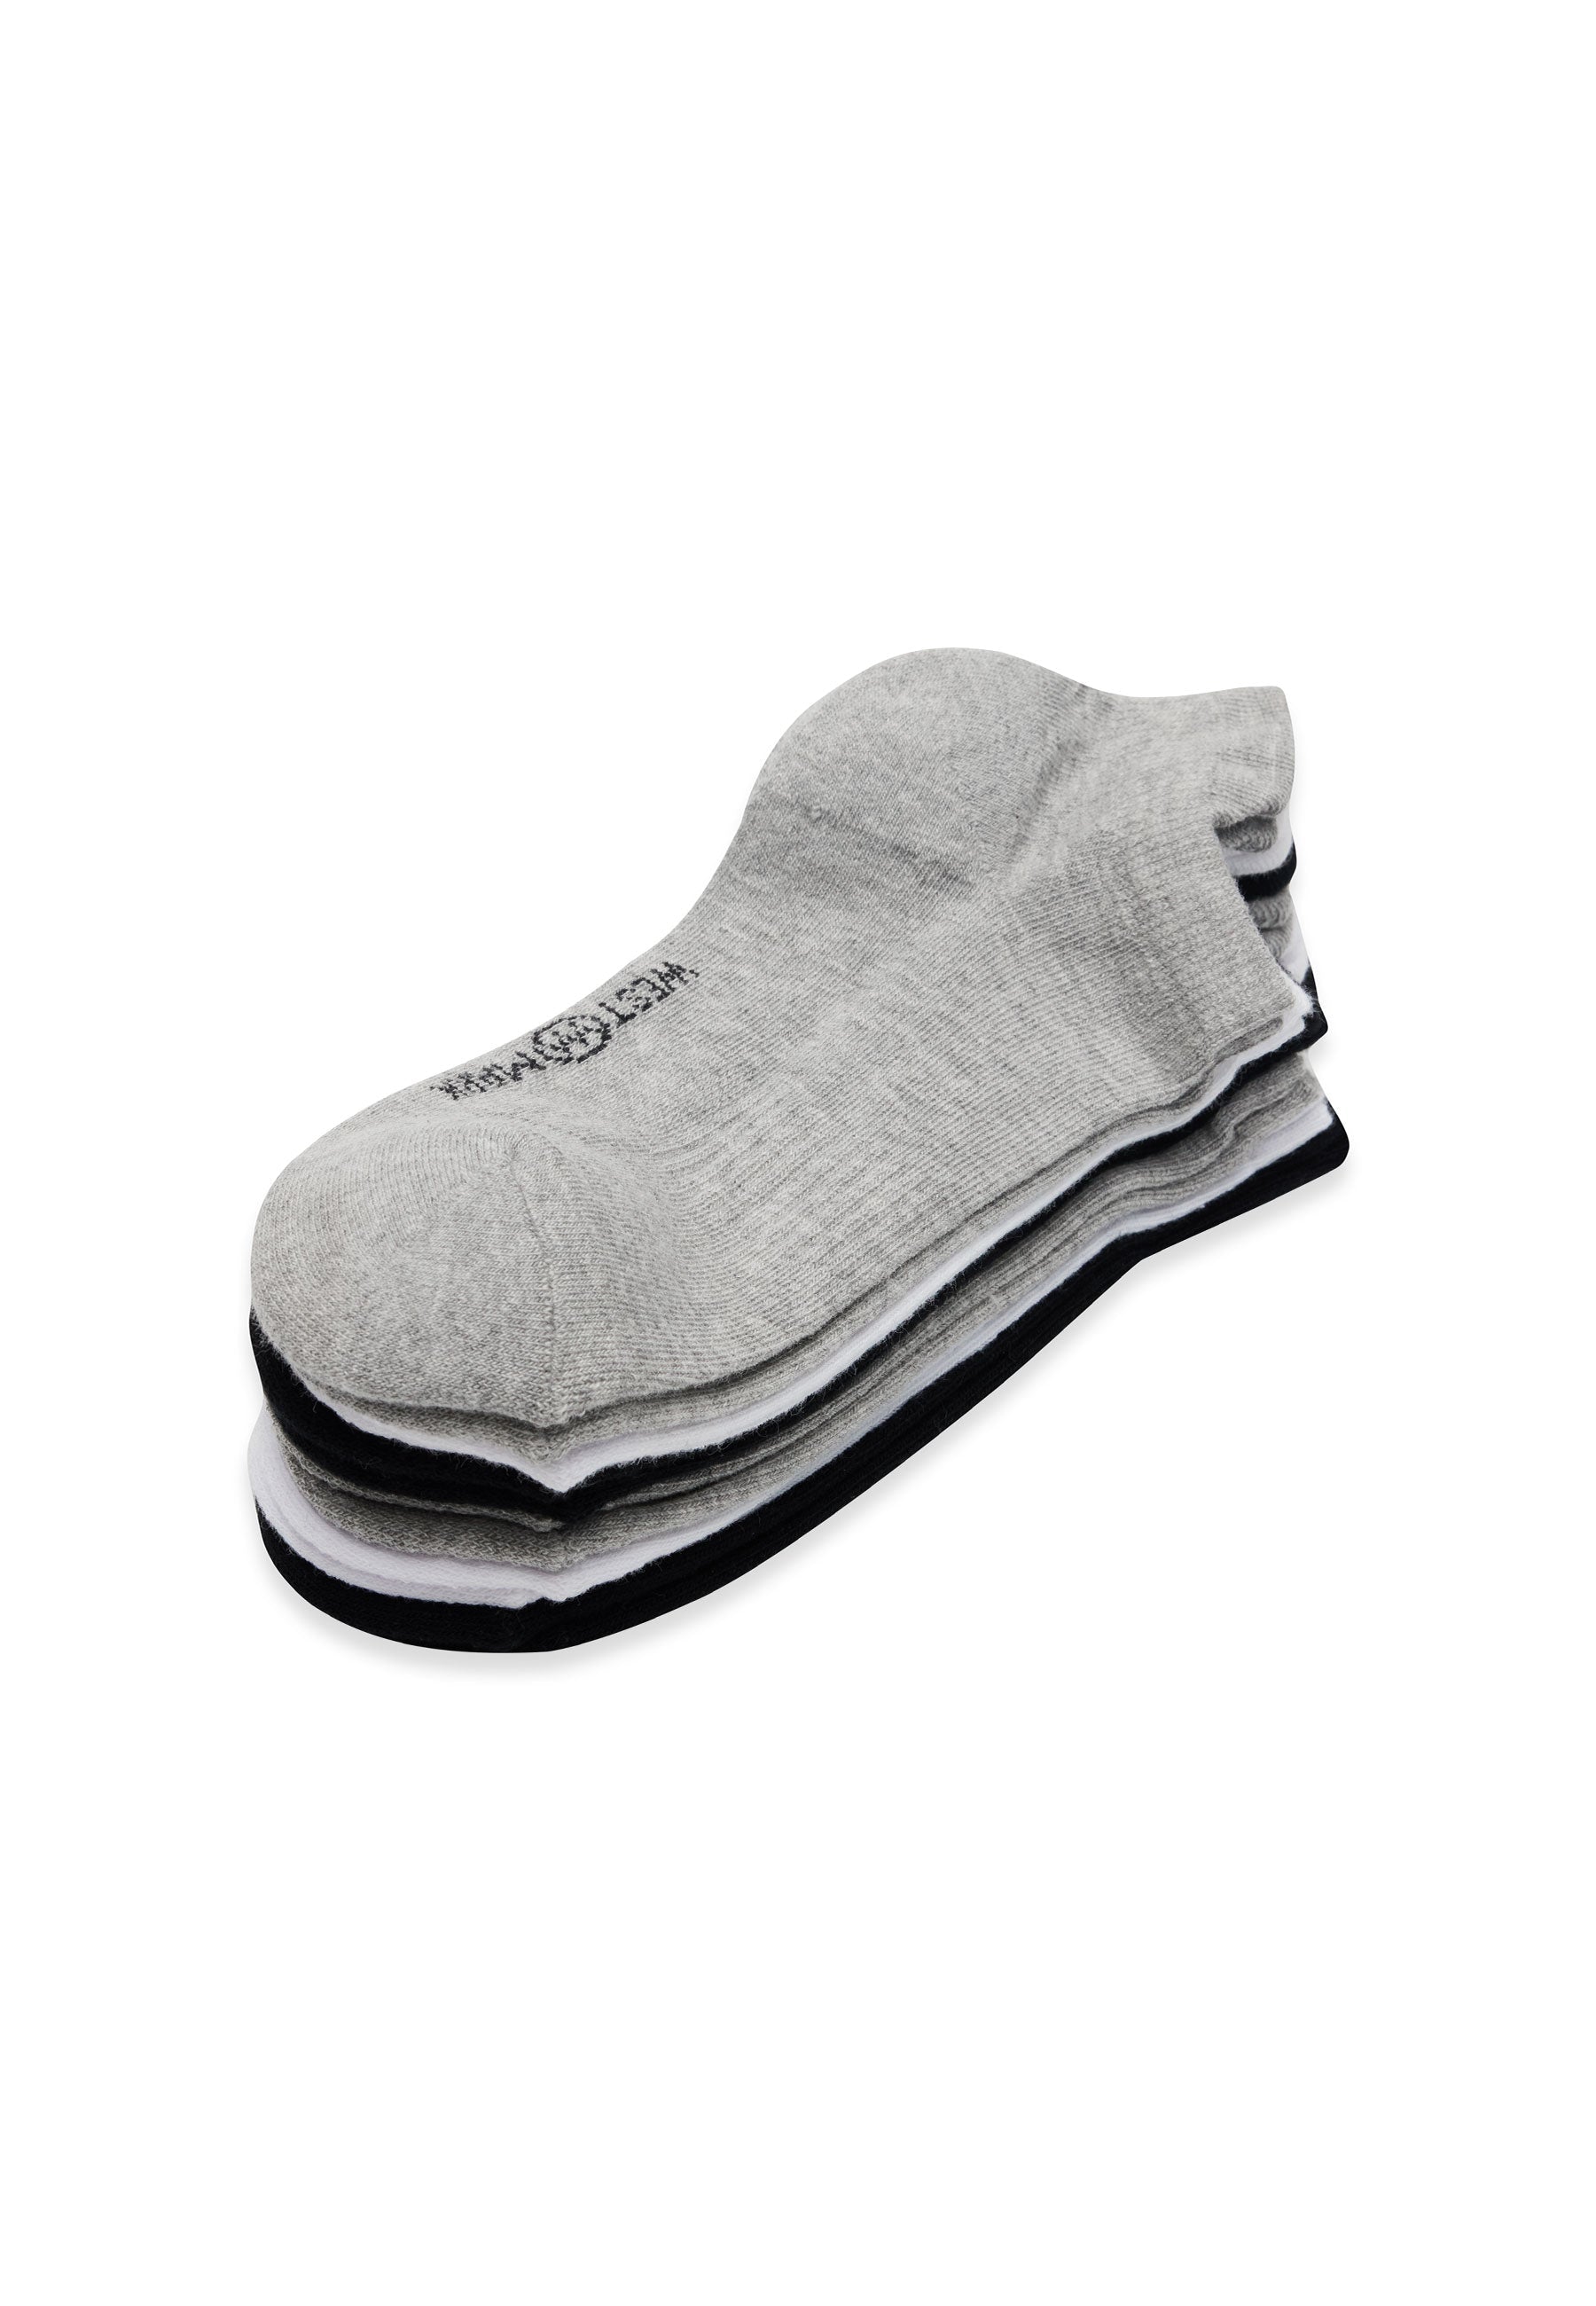 6’lı Siyah Beyaz Gri Pamuk Karışımlı Erkek Çorap Seti RUNNING - Socks - Westmark London EU(TR) Store Organik Pamuklu Sürdürülebilir Moda